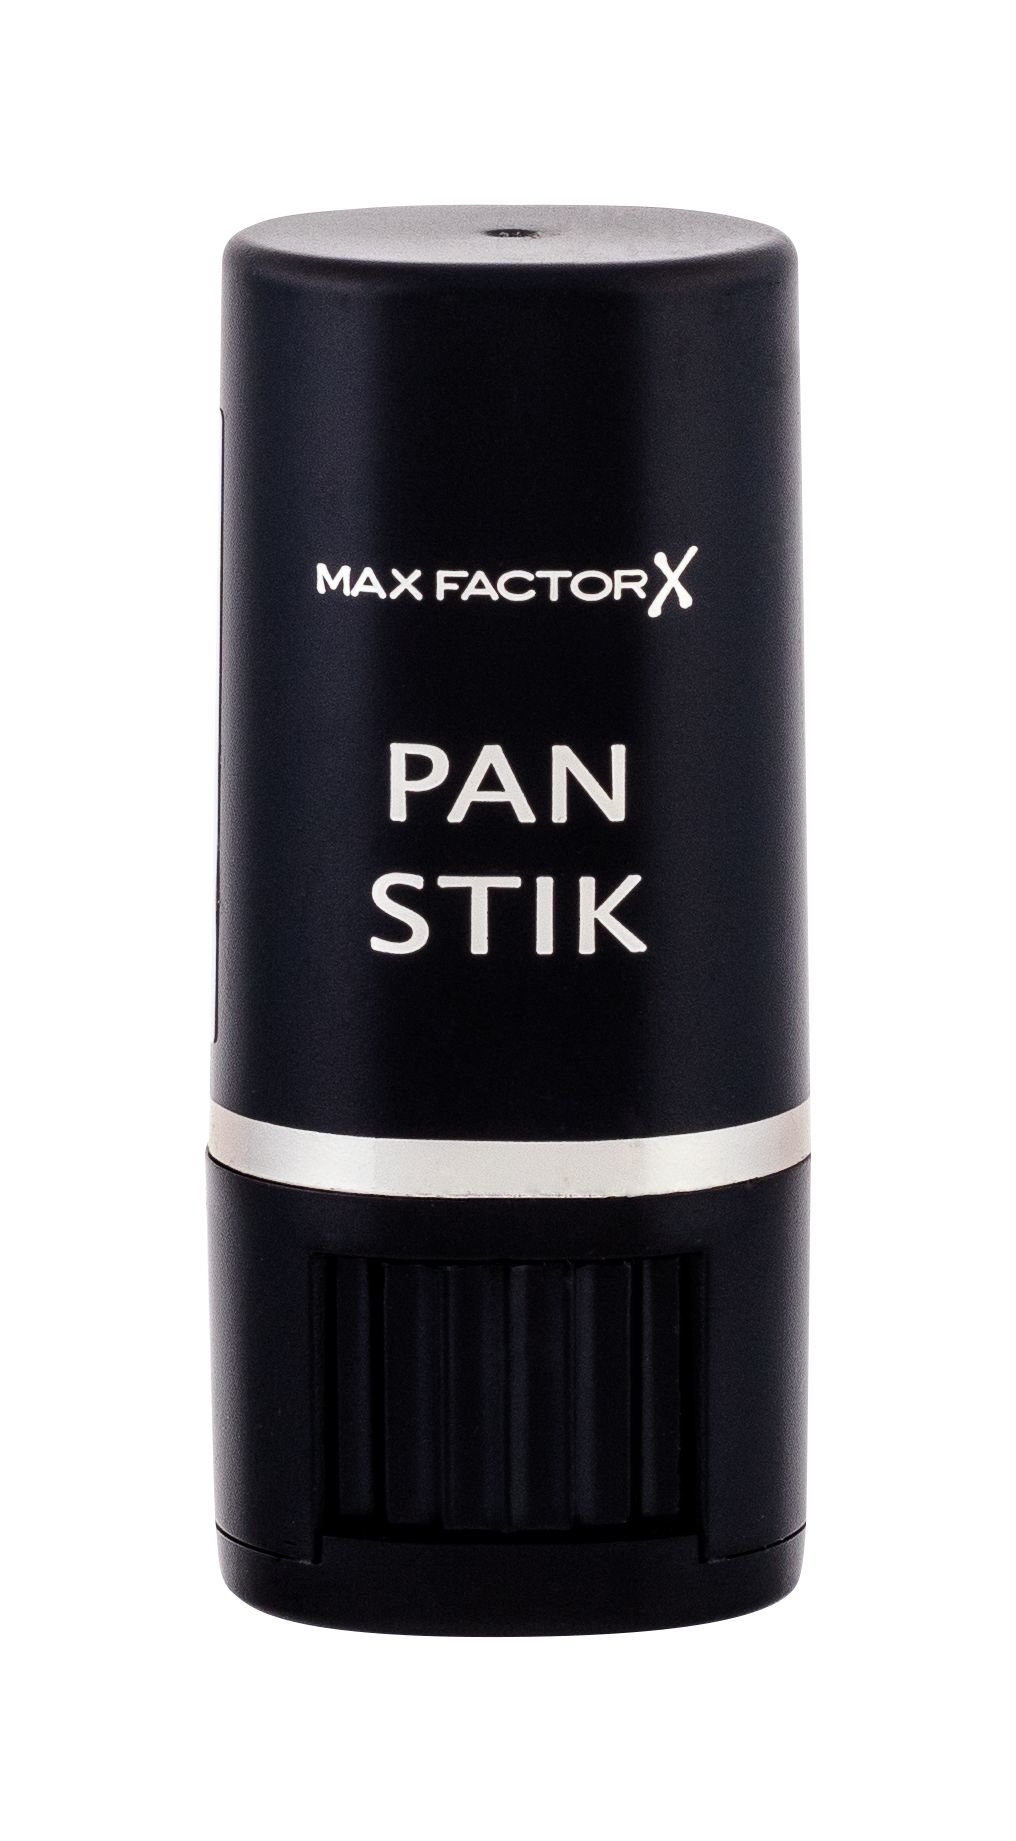 Max Factor Pan Stik makiažo pagrindas